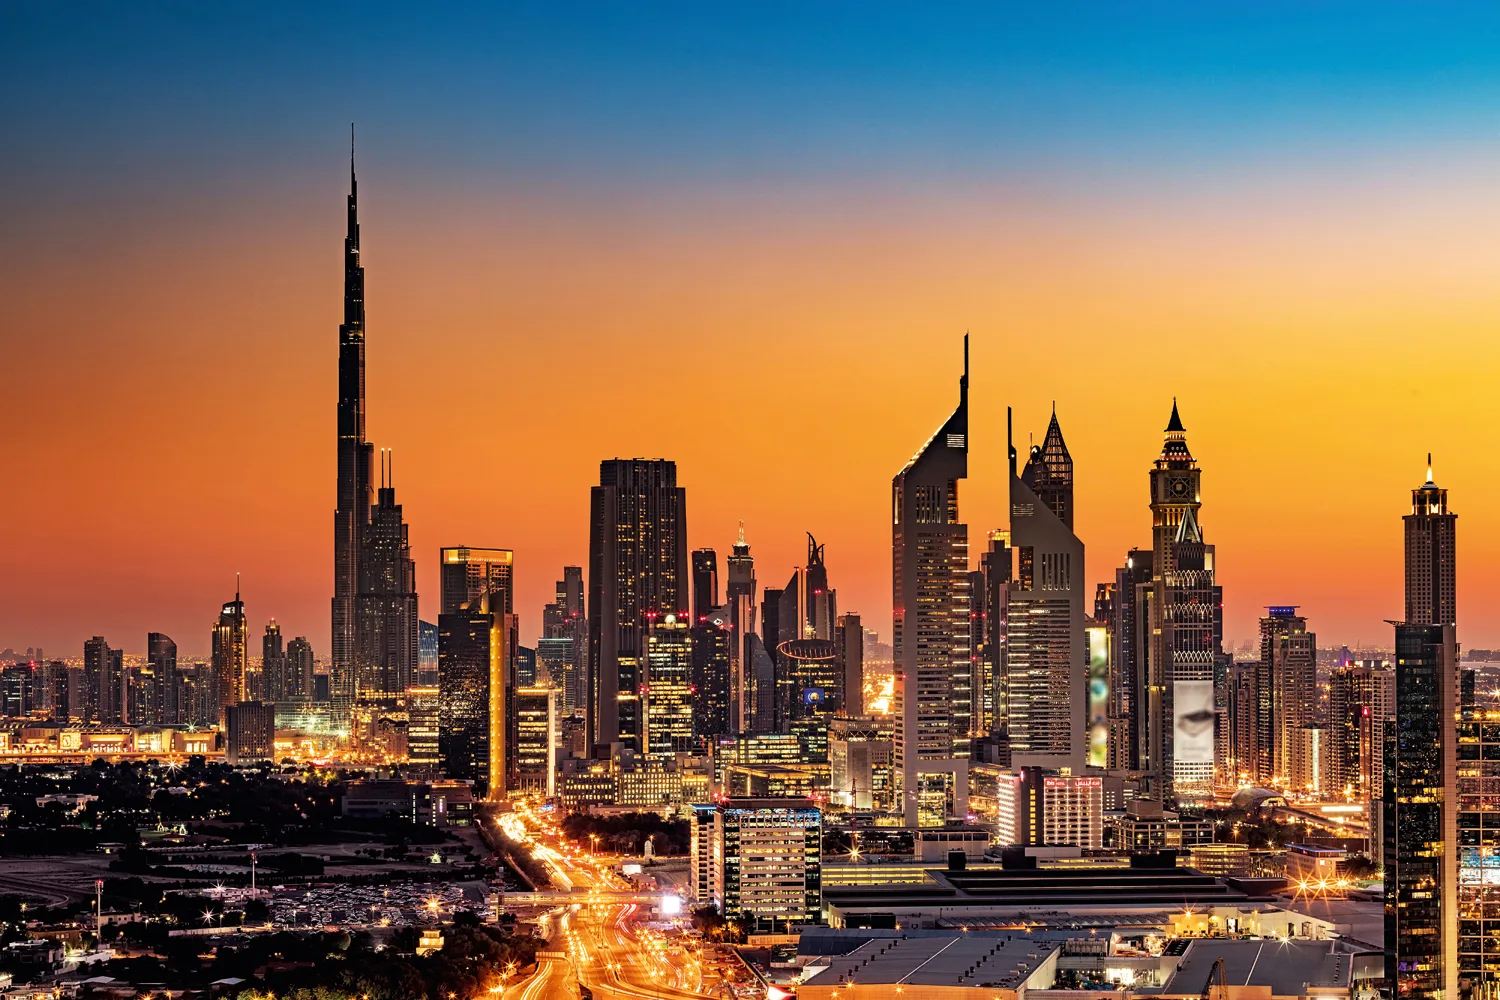 UAE 5 year residence visa